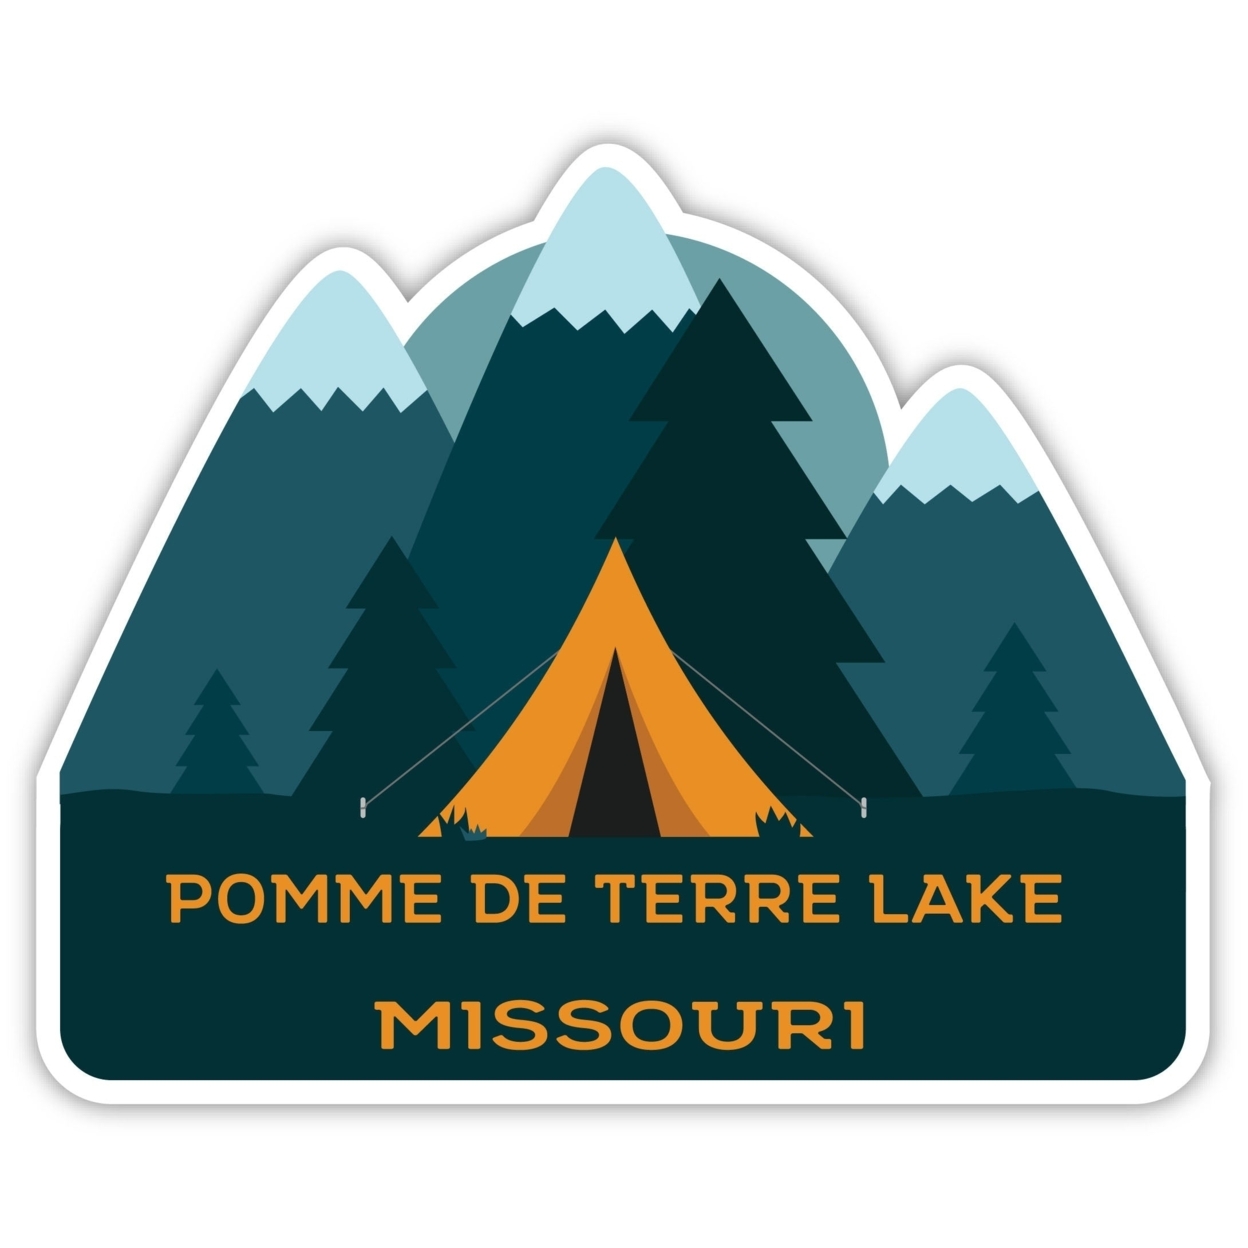 Pomme De Terre Lake Missouri Souvenir Decorative Stickers (Choose Theme And Size) - Single Unit, 4-Inch, Tent